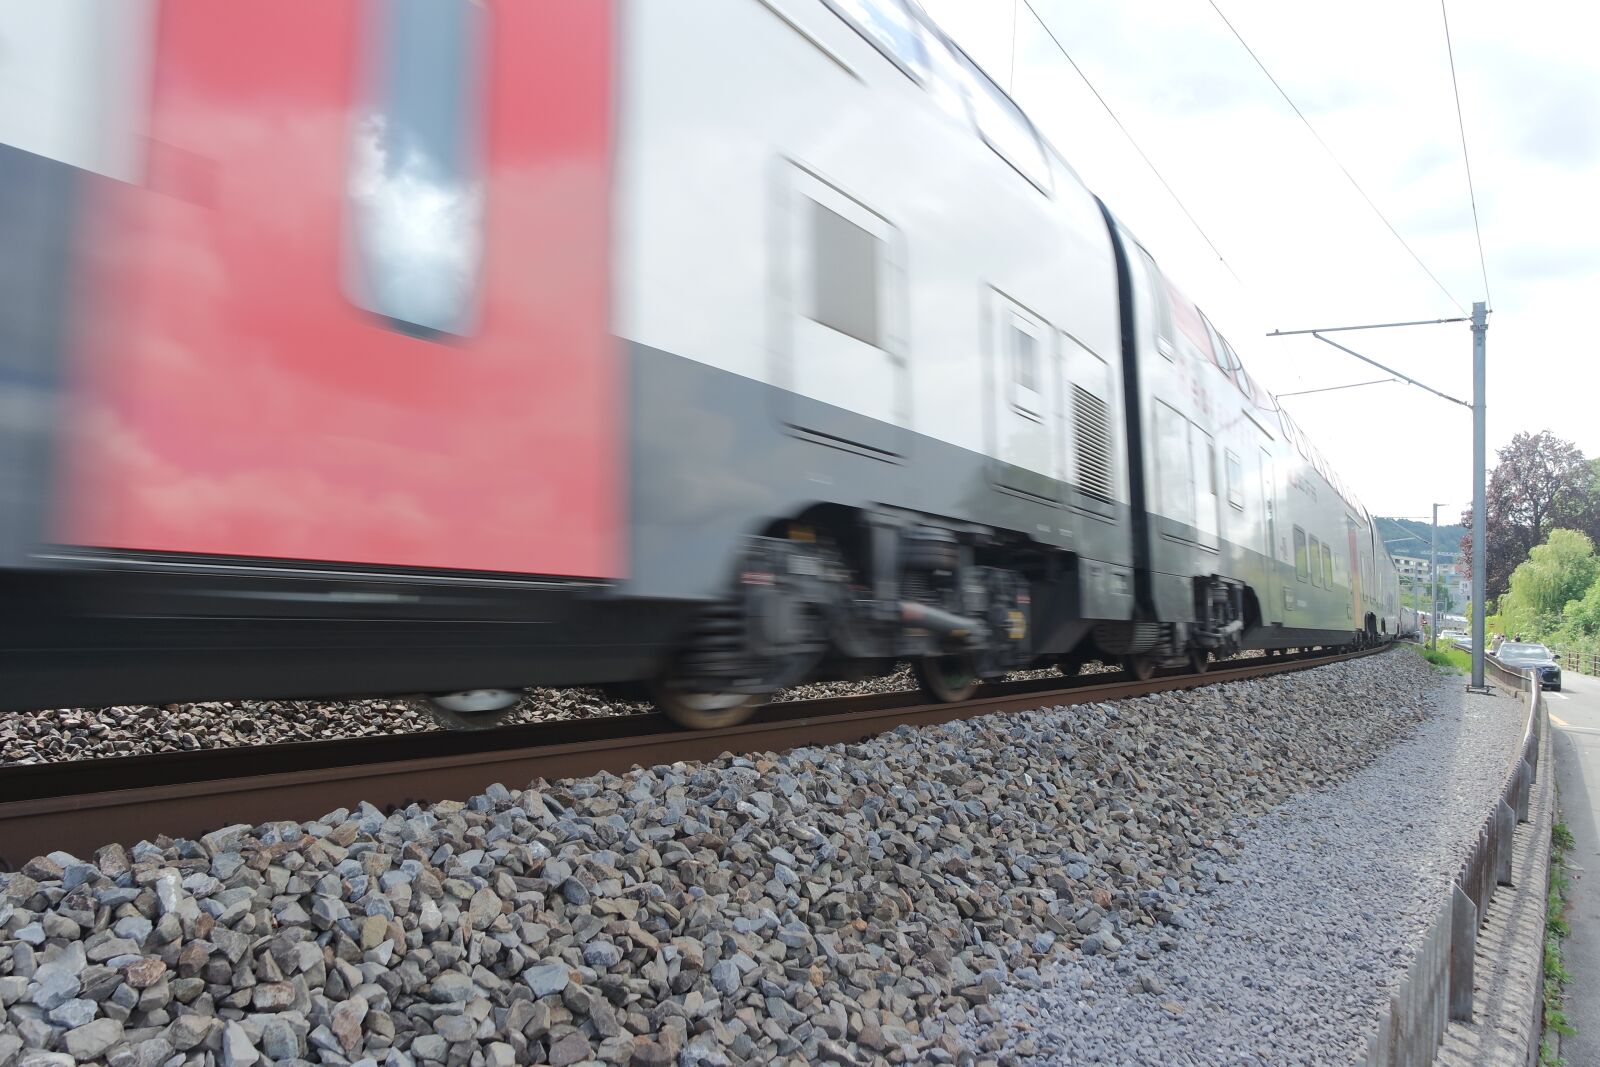 Samsung NX 16-50mm F3.5-5.6 Power Zoom ED OIS sample photo. Zurich, lake zurich, train photography